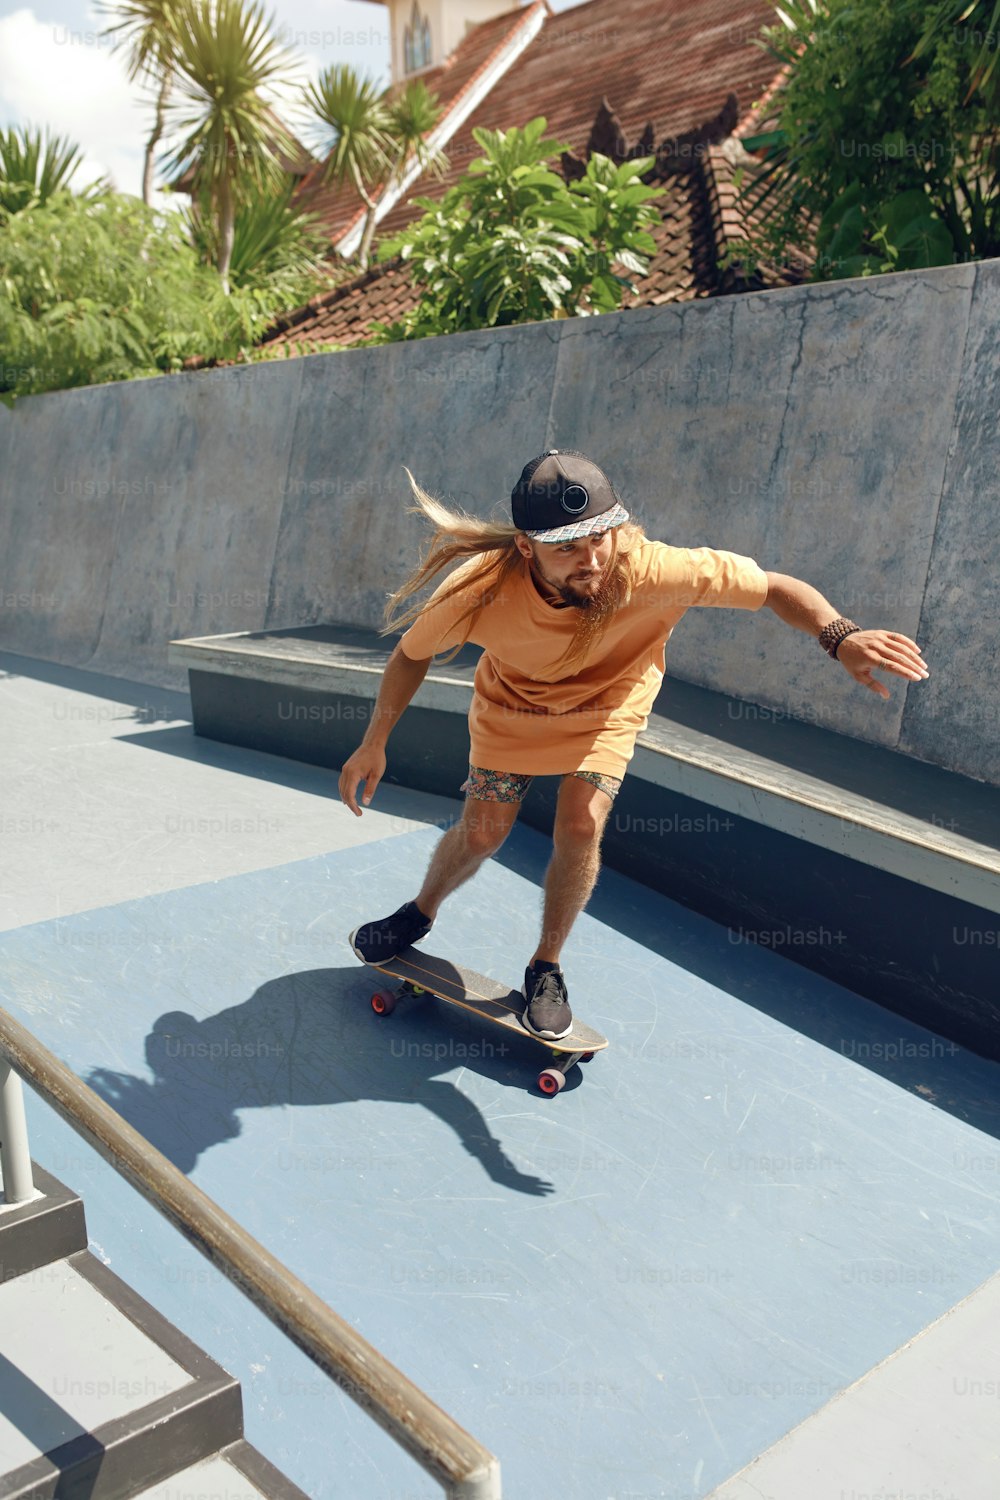 Subcultura. Homem skatista no Skatepark. Cara em traje casual com equipamento esportivo moderno andando de skate em rampa de concreto. Atividade extrema como estilo de vida urbano.